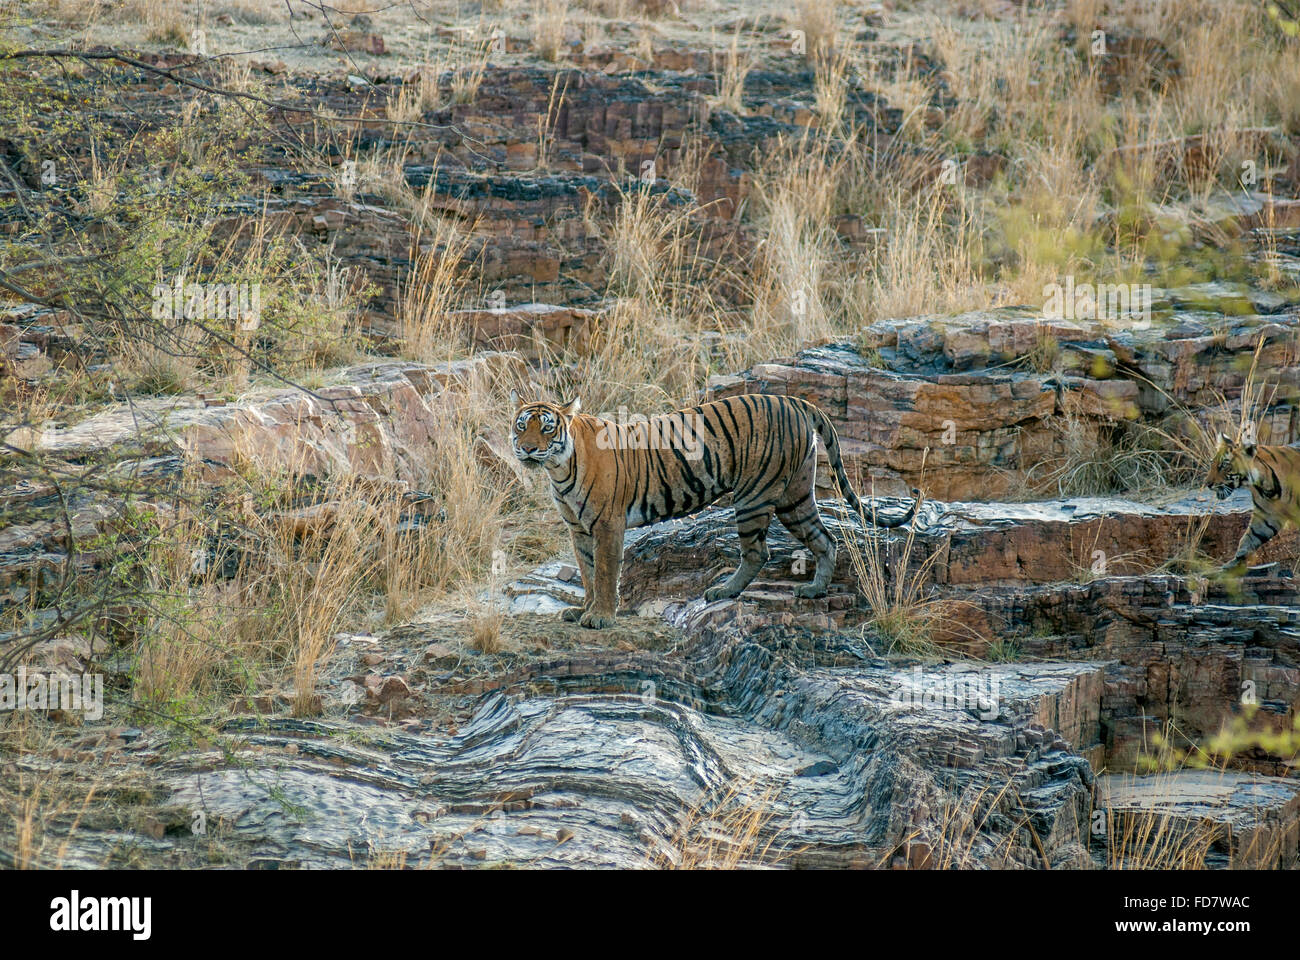 Tigresse du Bengale machali sur la colline à regarder la réserve de tigres de Ranthambore, en Inde. ( Panthera tigris ) Banque D'Images